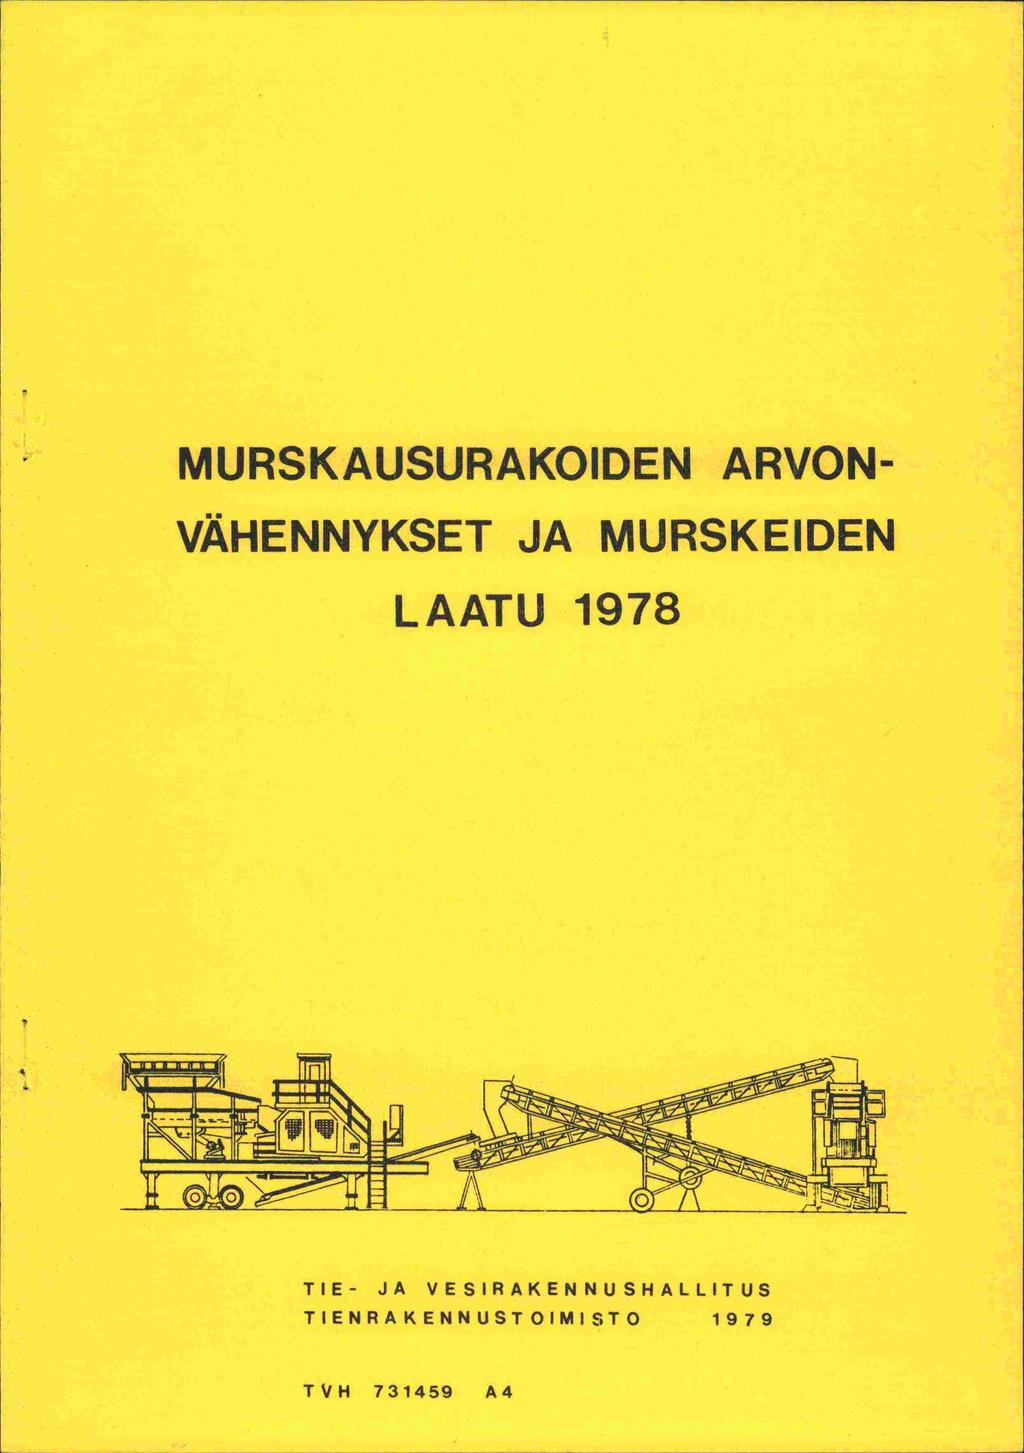 MURSKAUSURAKOIDEN ARVON- VÄHENNYKSET JA MURSKEIDEN LAATU 1978